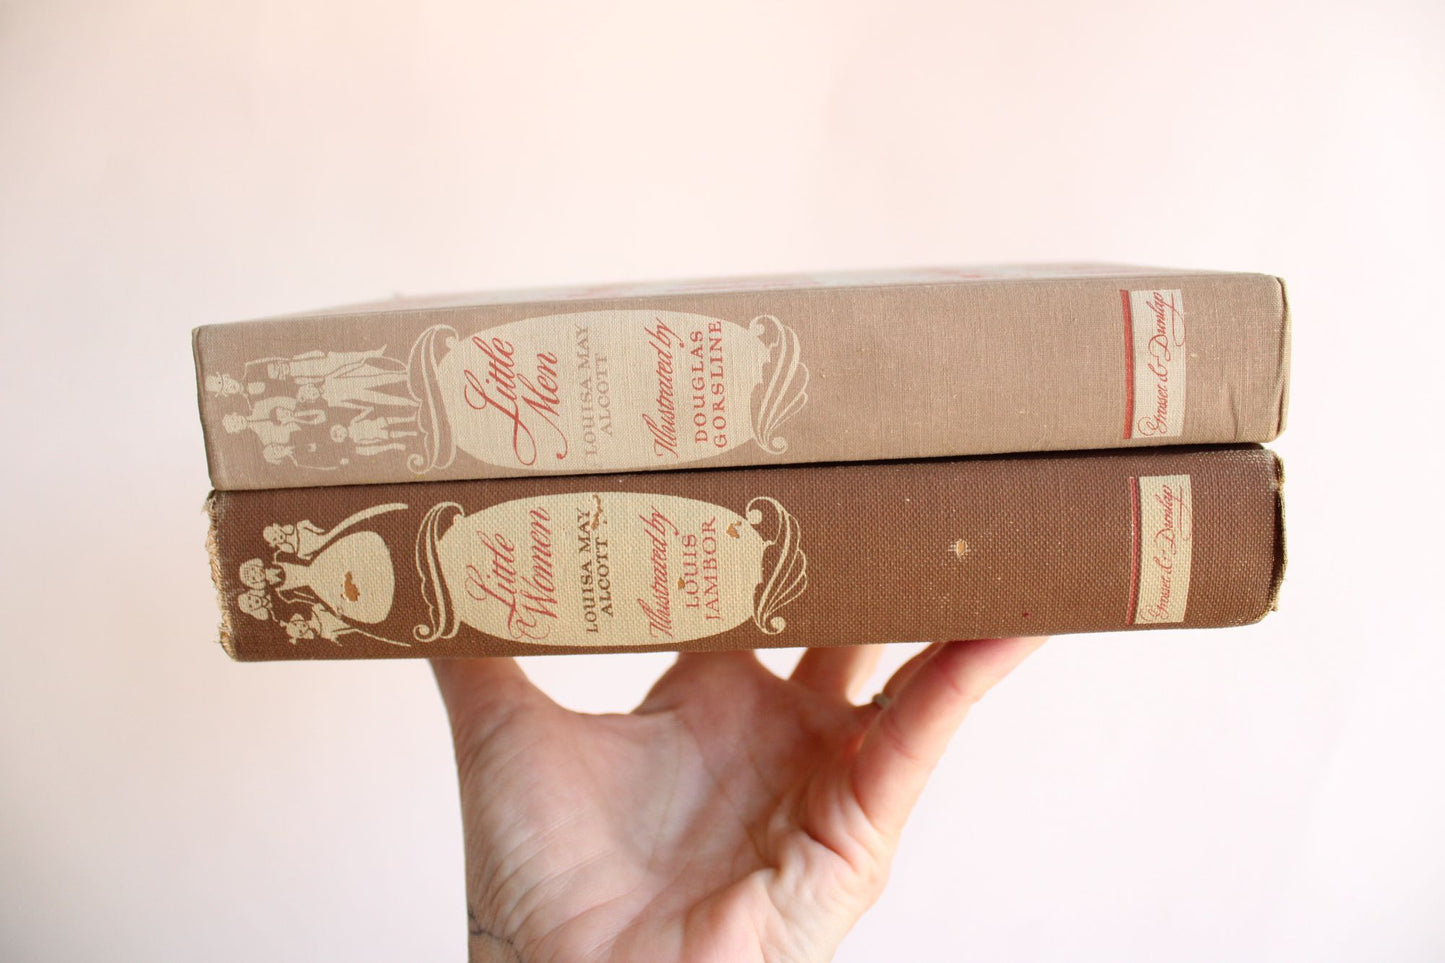 Vintage 1940s Book, "Little Women" & "Little Men" by Louisa May Alcott